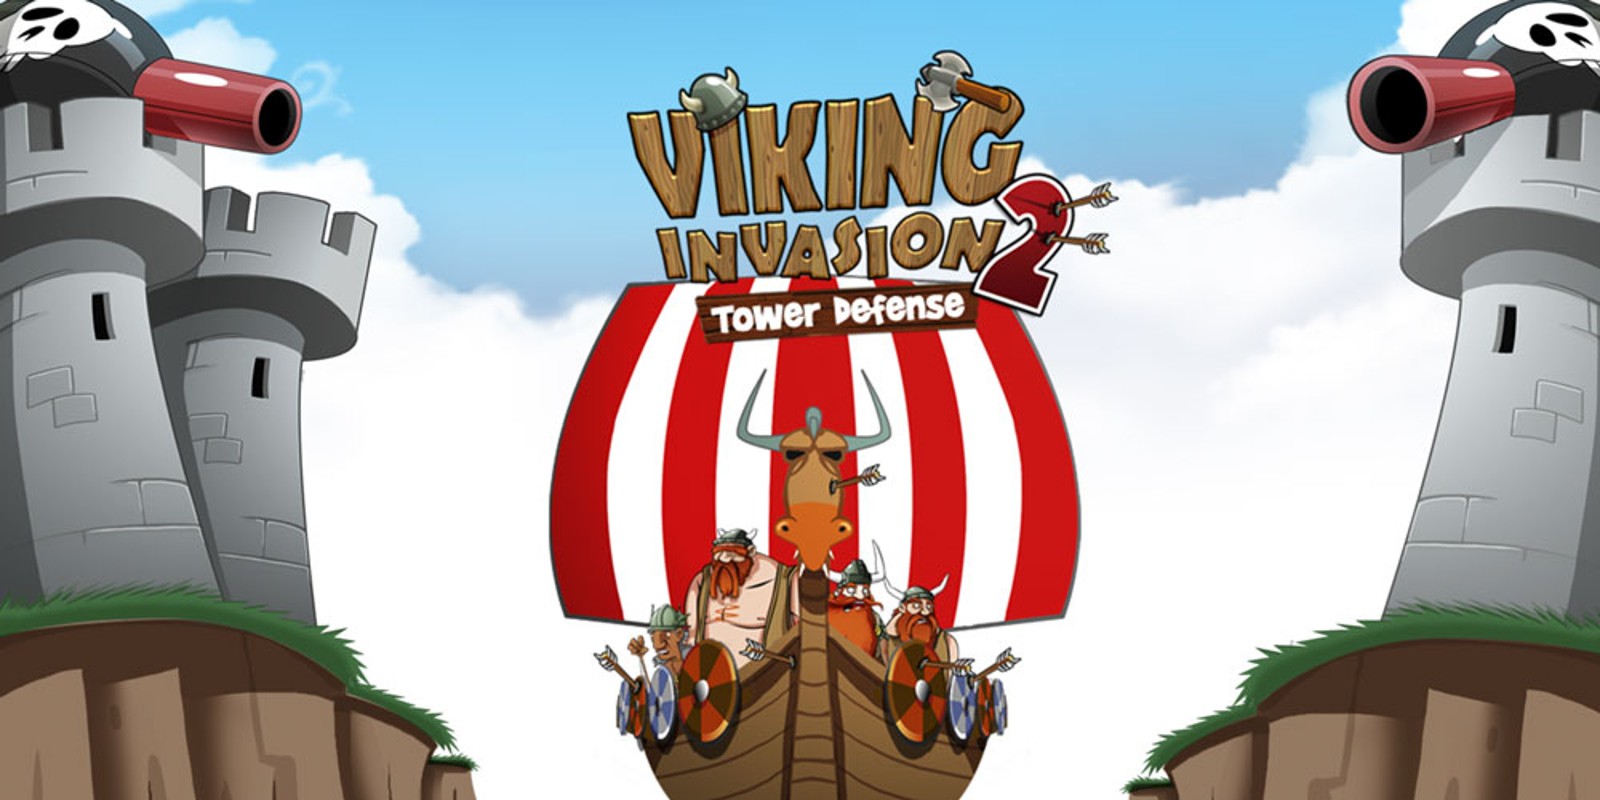 Игры на 2 башни. Две башни игра. Vikings башни. Tower Defense Викинги. Viking Invasion игра.